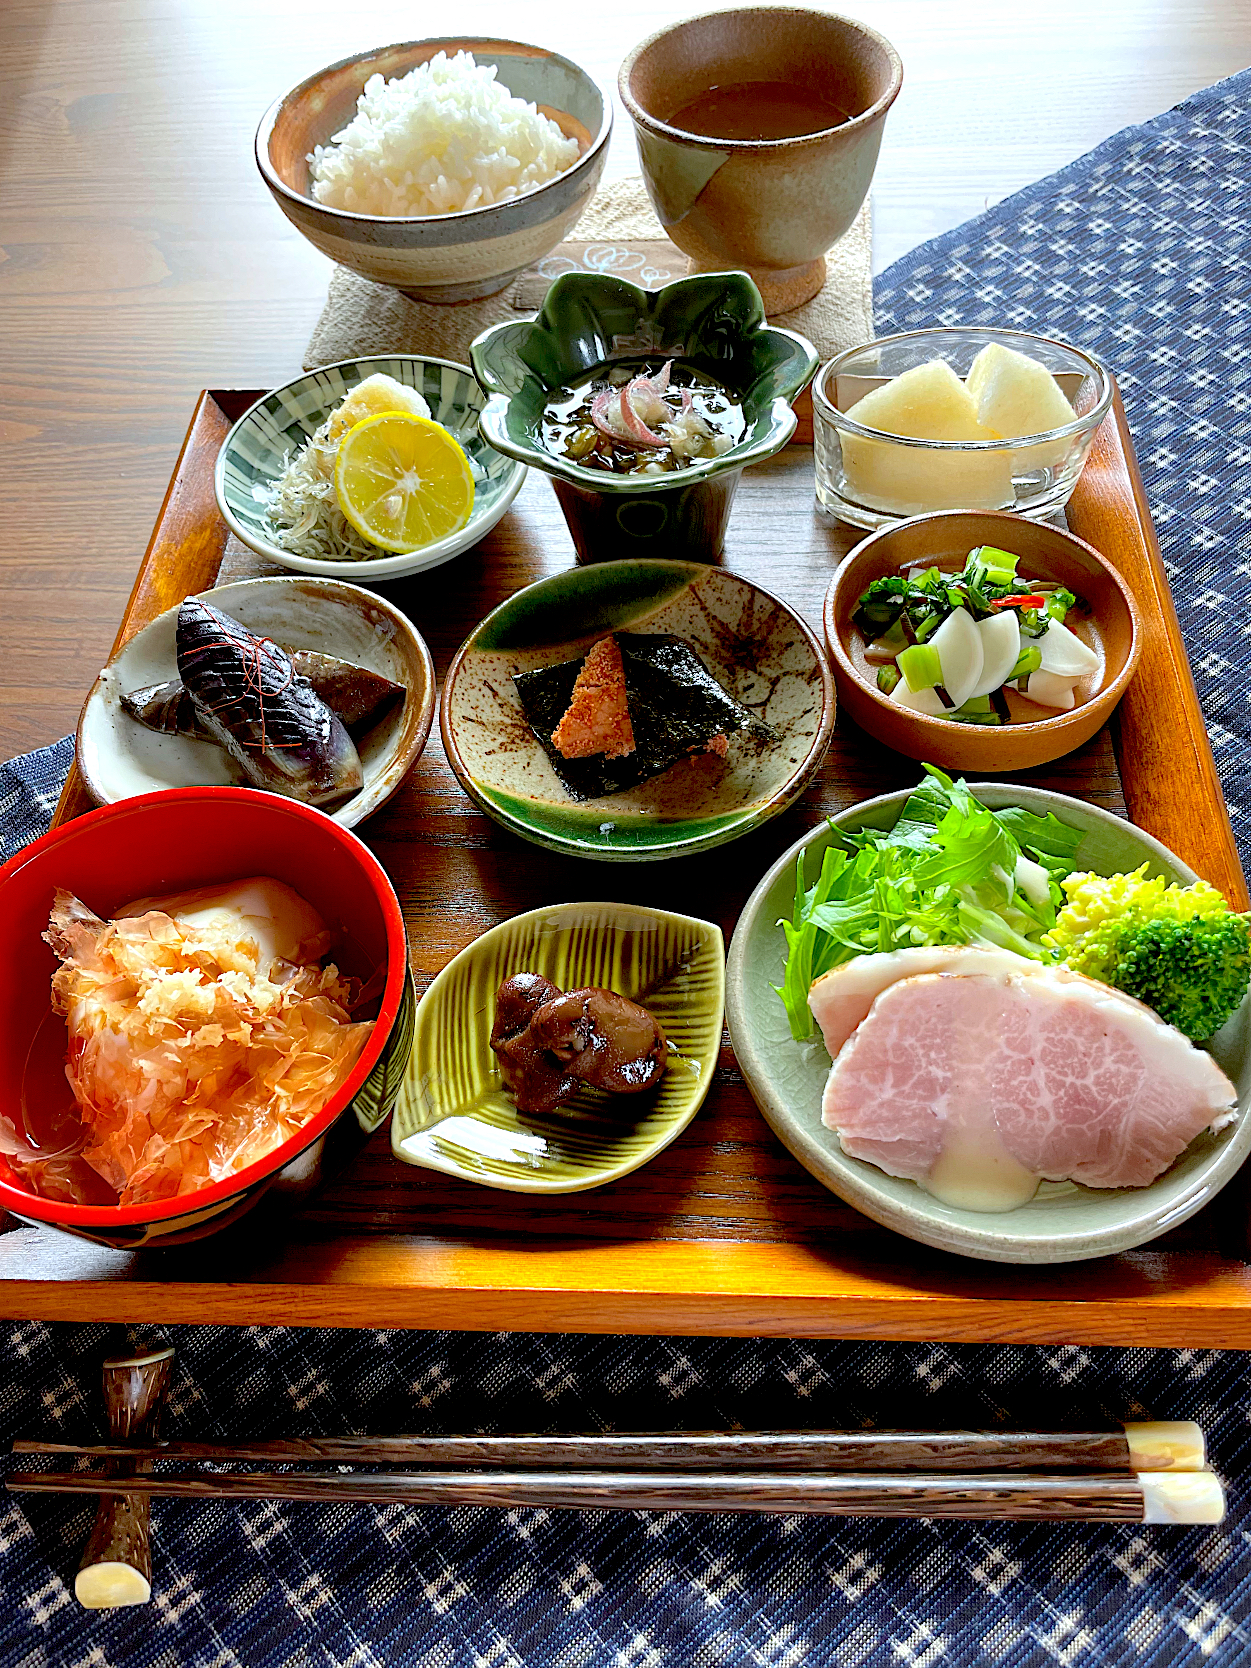 サミカさんの料理 豆皿で朝ごはん〜ちょこちょこシリーズ〜